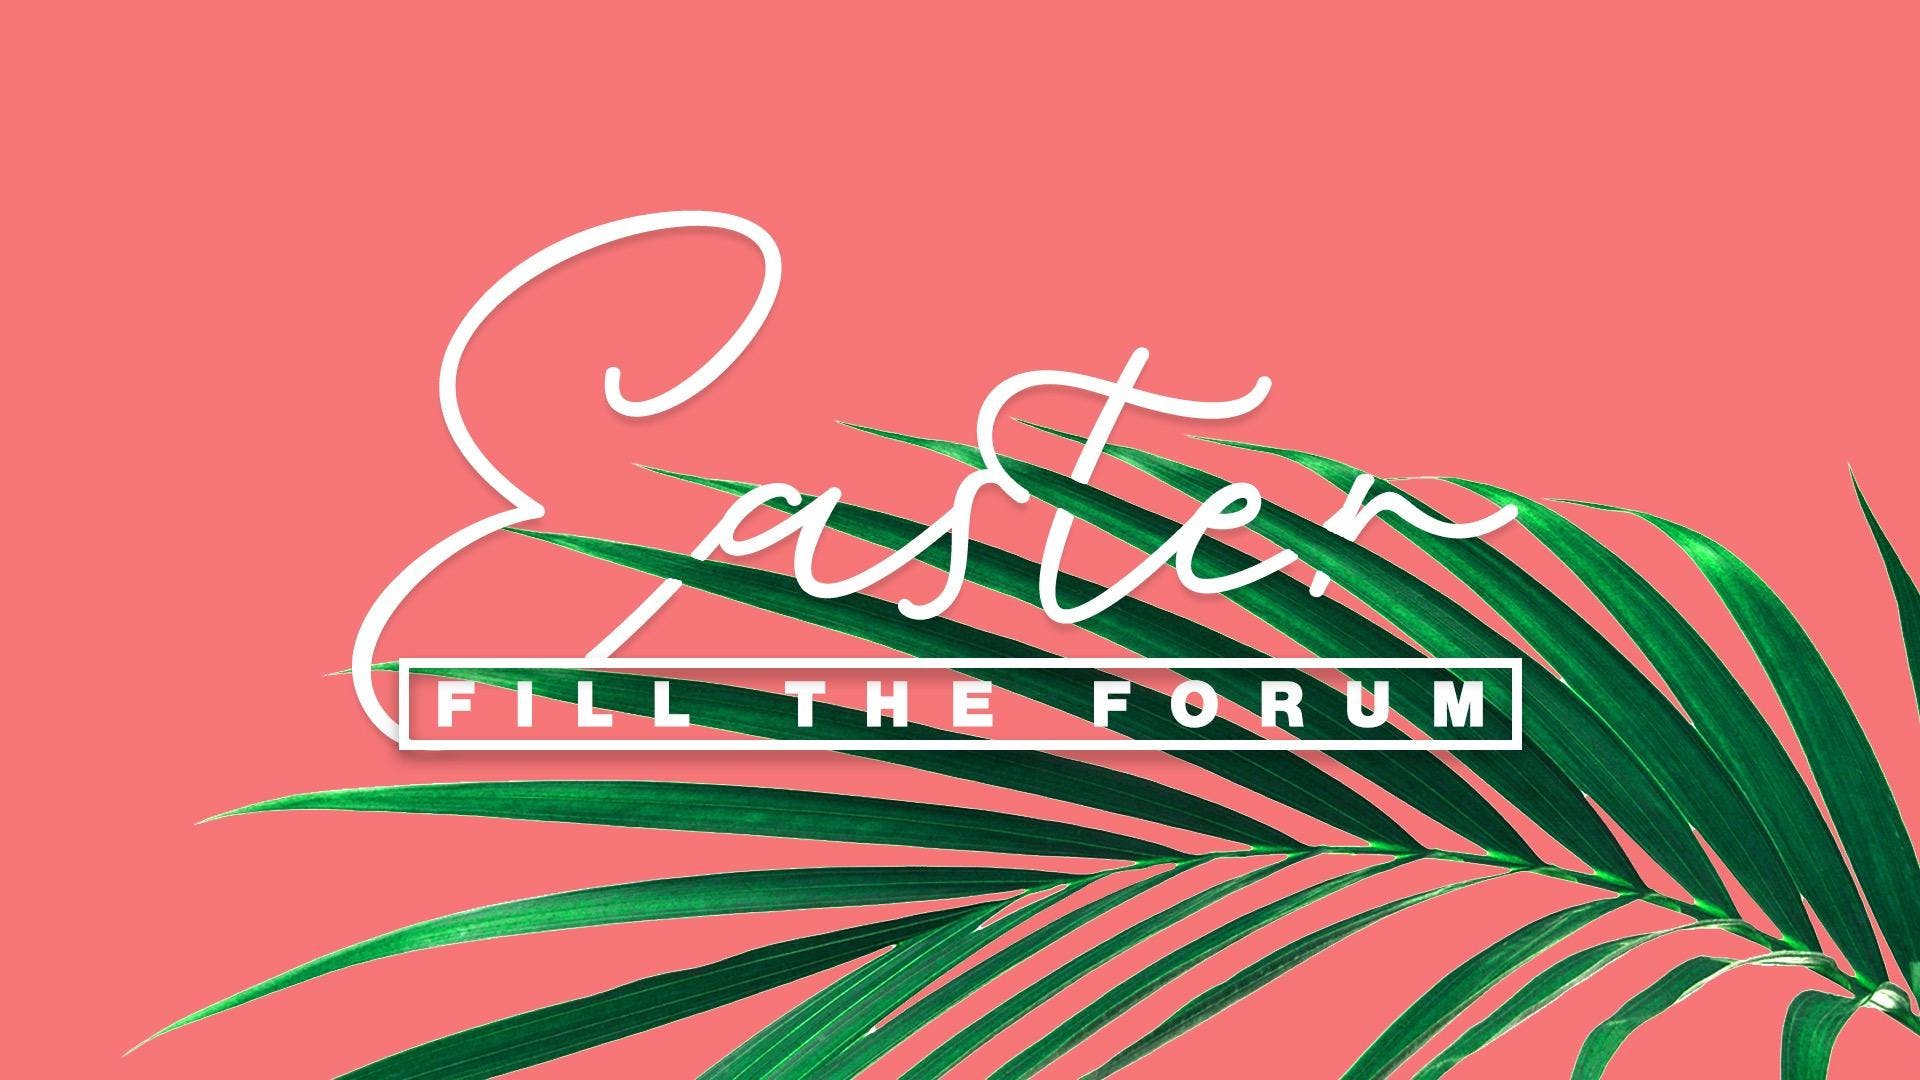 Easter Sunday Celebration Uic Forum City Church Chicago